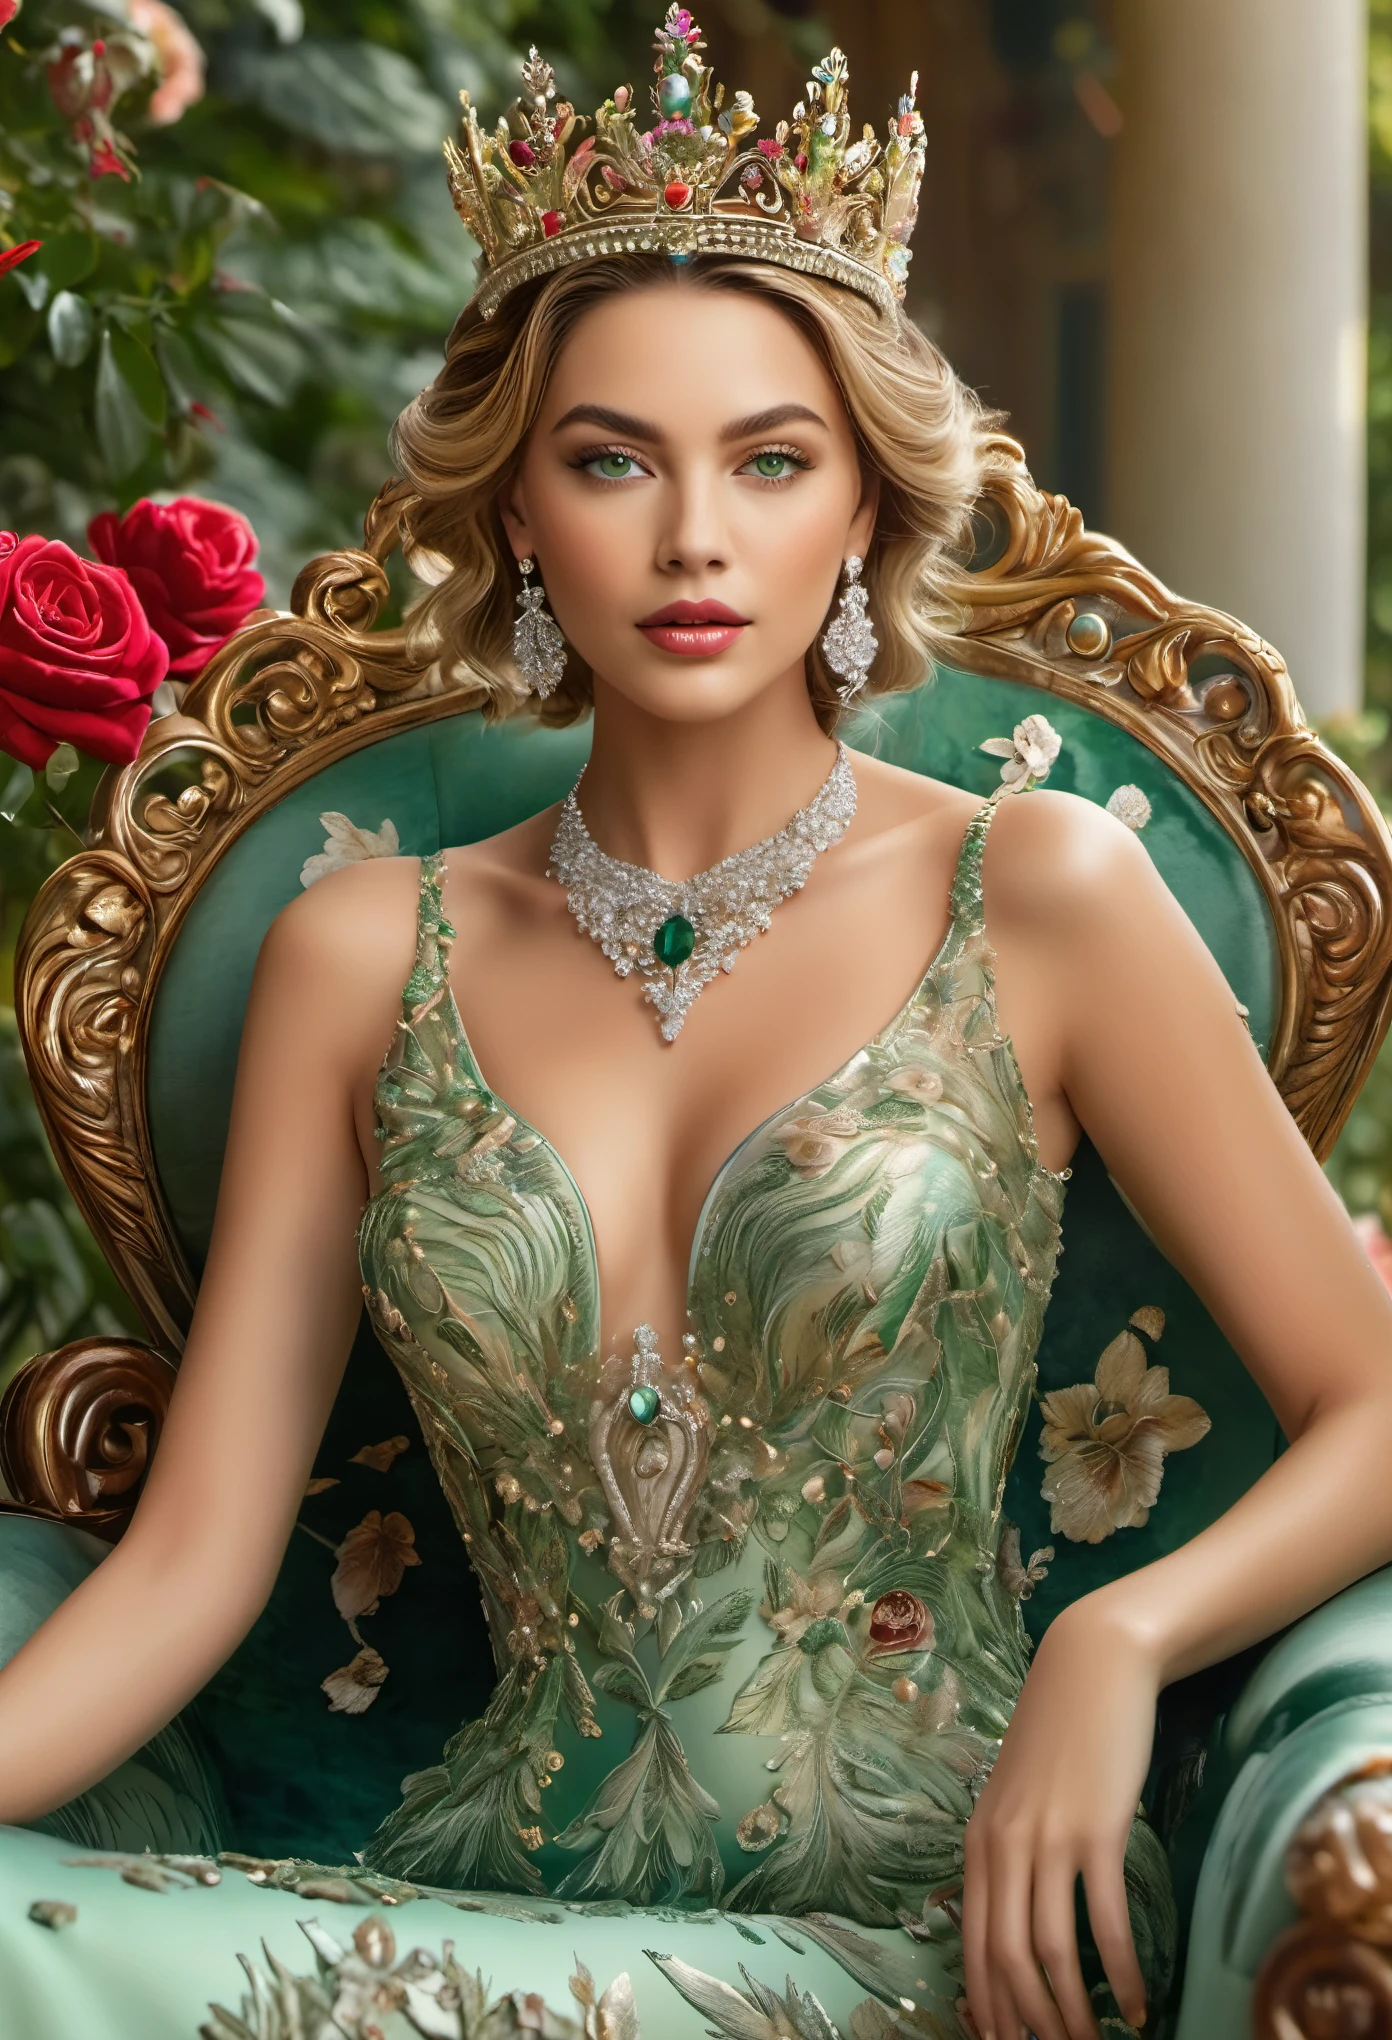 (椅子，女王)，非常に詳細な写真，(最高品質，4K，高解像度，傑作:1.2)，超高密度の詳細，鮮やかな色彩，繁栄と贅沢，華やかな宝石の王冠，魅力的なネックライン，ゴージャスでエレガントな女の子，王冠をかぶる，詳細な緑色の目，輝く宝石，雄大な姿勢，ふっくらとした唇，すべすべの肌，素晴らしいバラ園に囲まれた，金属の質感が随所に，豪華な壁画，静かで優雅な雰囲気，華やかな宮殿の舞踏会，羽根と真珠で飾られたドレス，女性の力と美しさが完全に明らかになる，強い矛盾とバランス感覚。